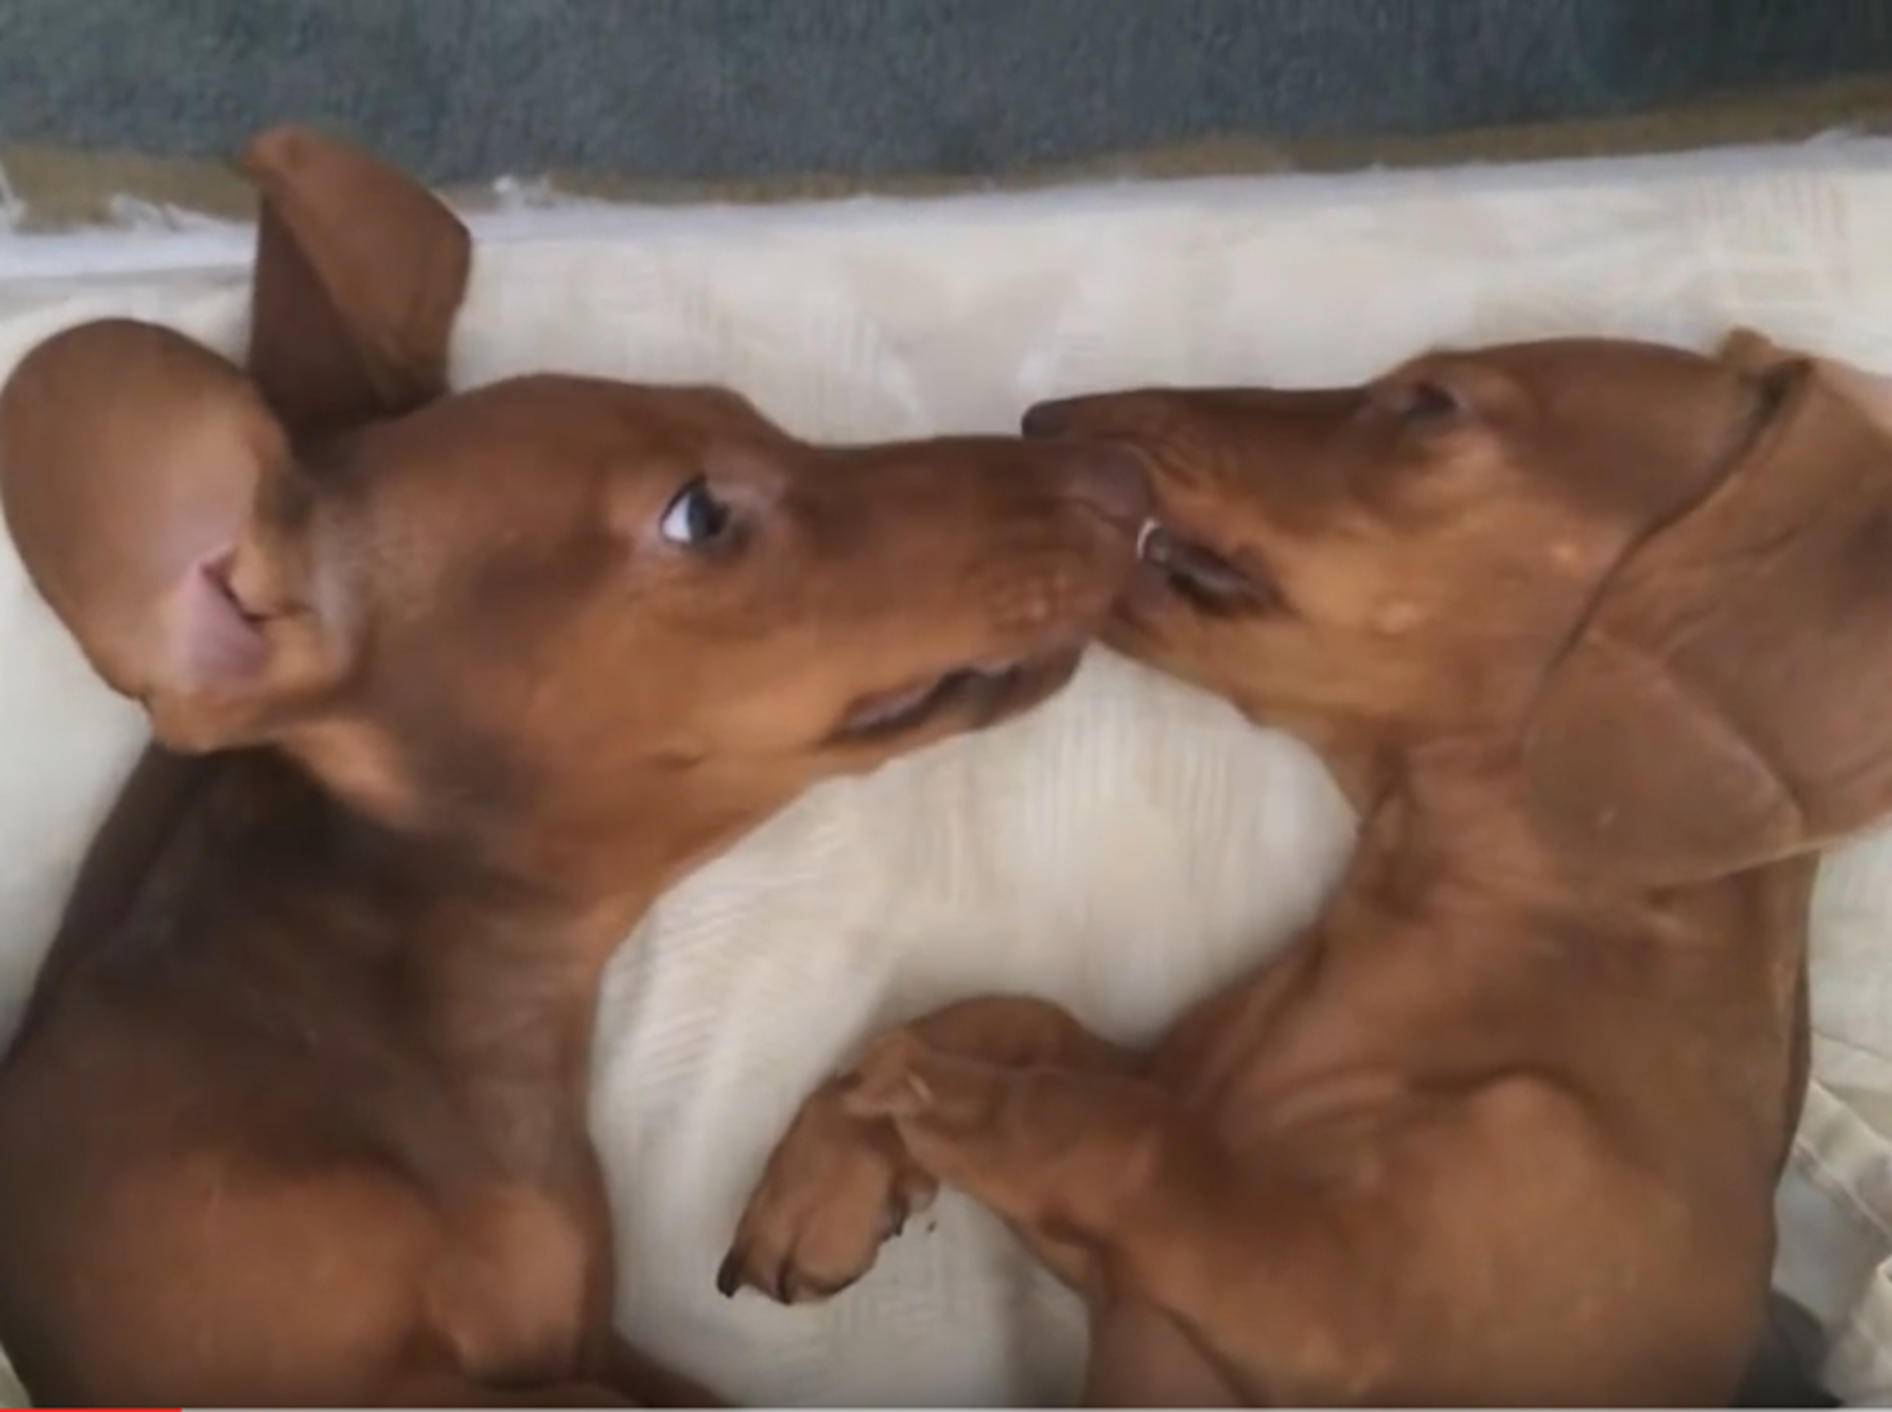 Herzige Dackel geben sich Hundeknutschis vorm Einschlafen – YouTube / DailyPicksandFlicks